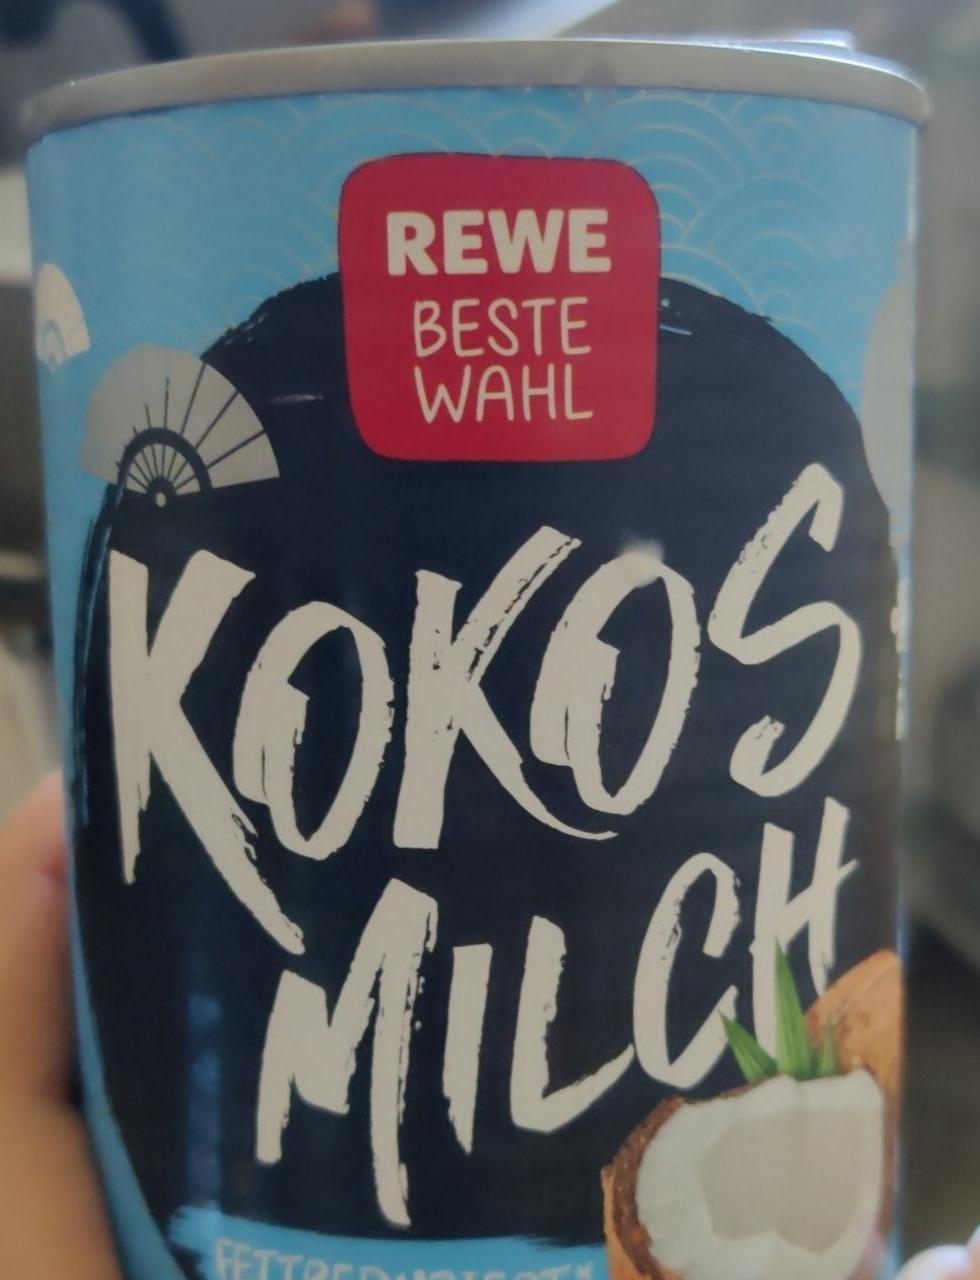 Fotografie - Kokos Milch Fettreduziert Rewe Beste Wahl